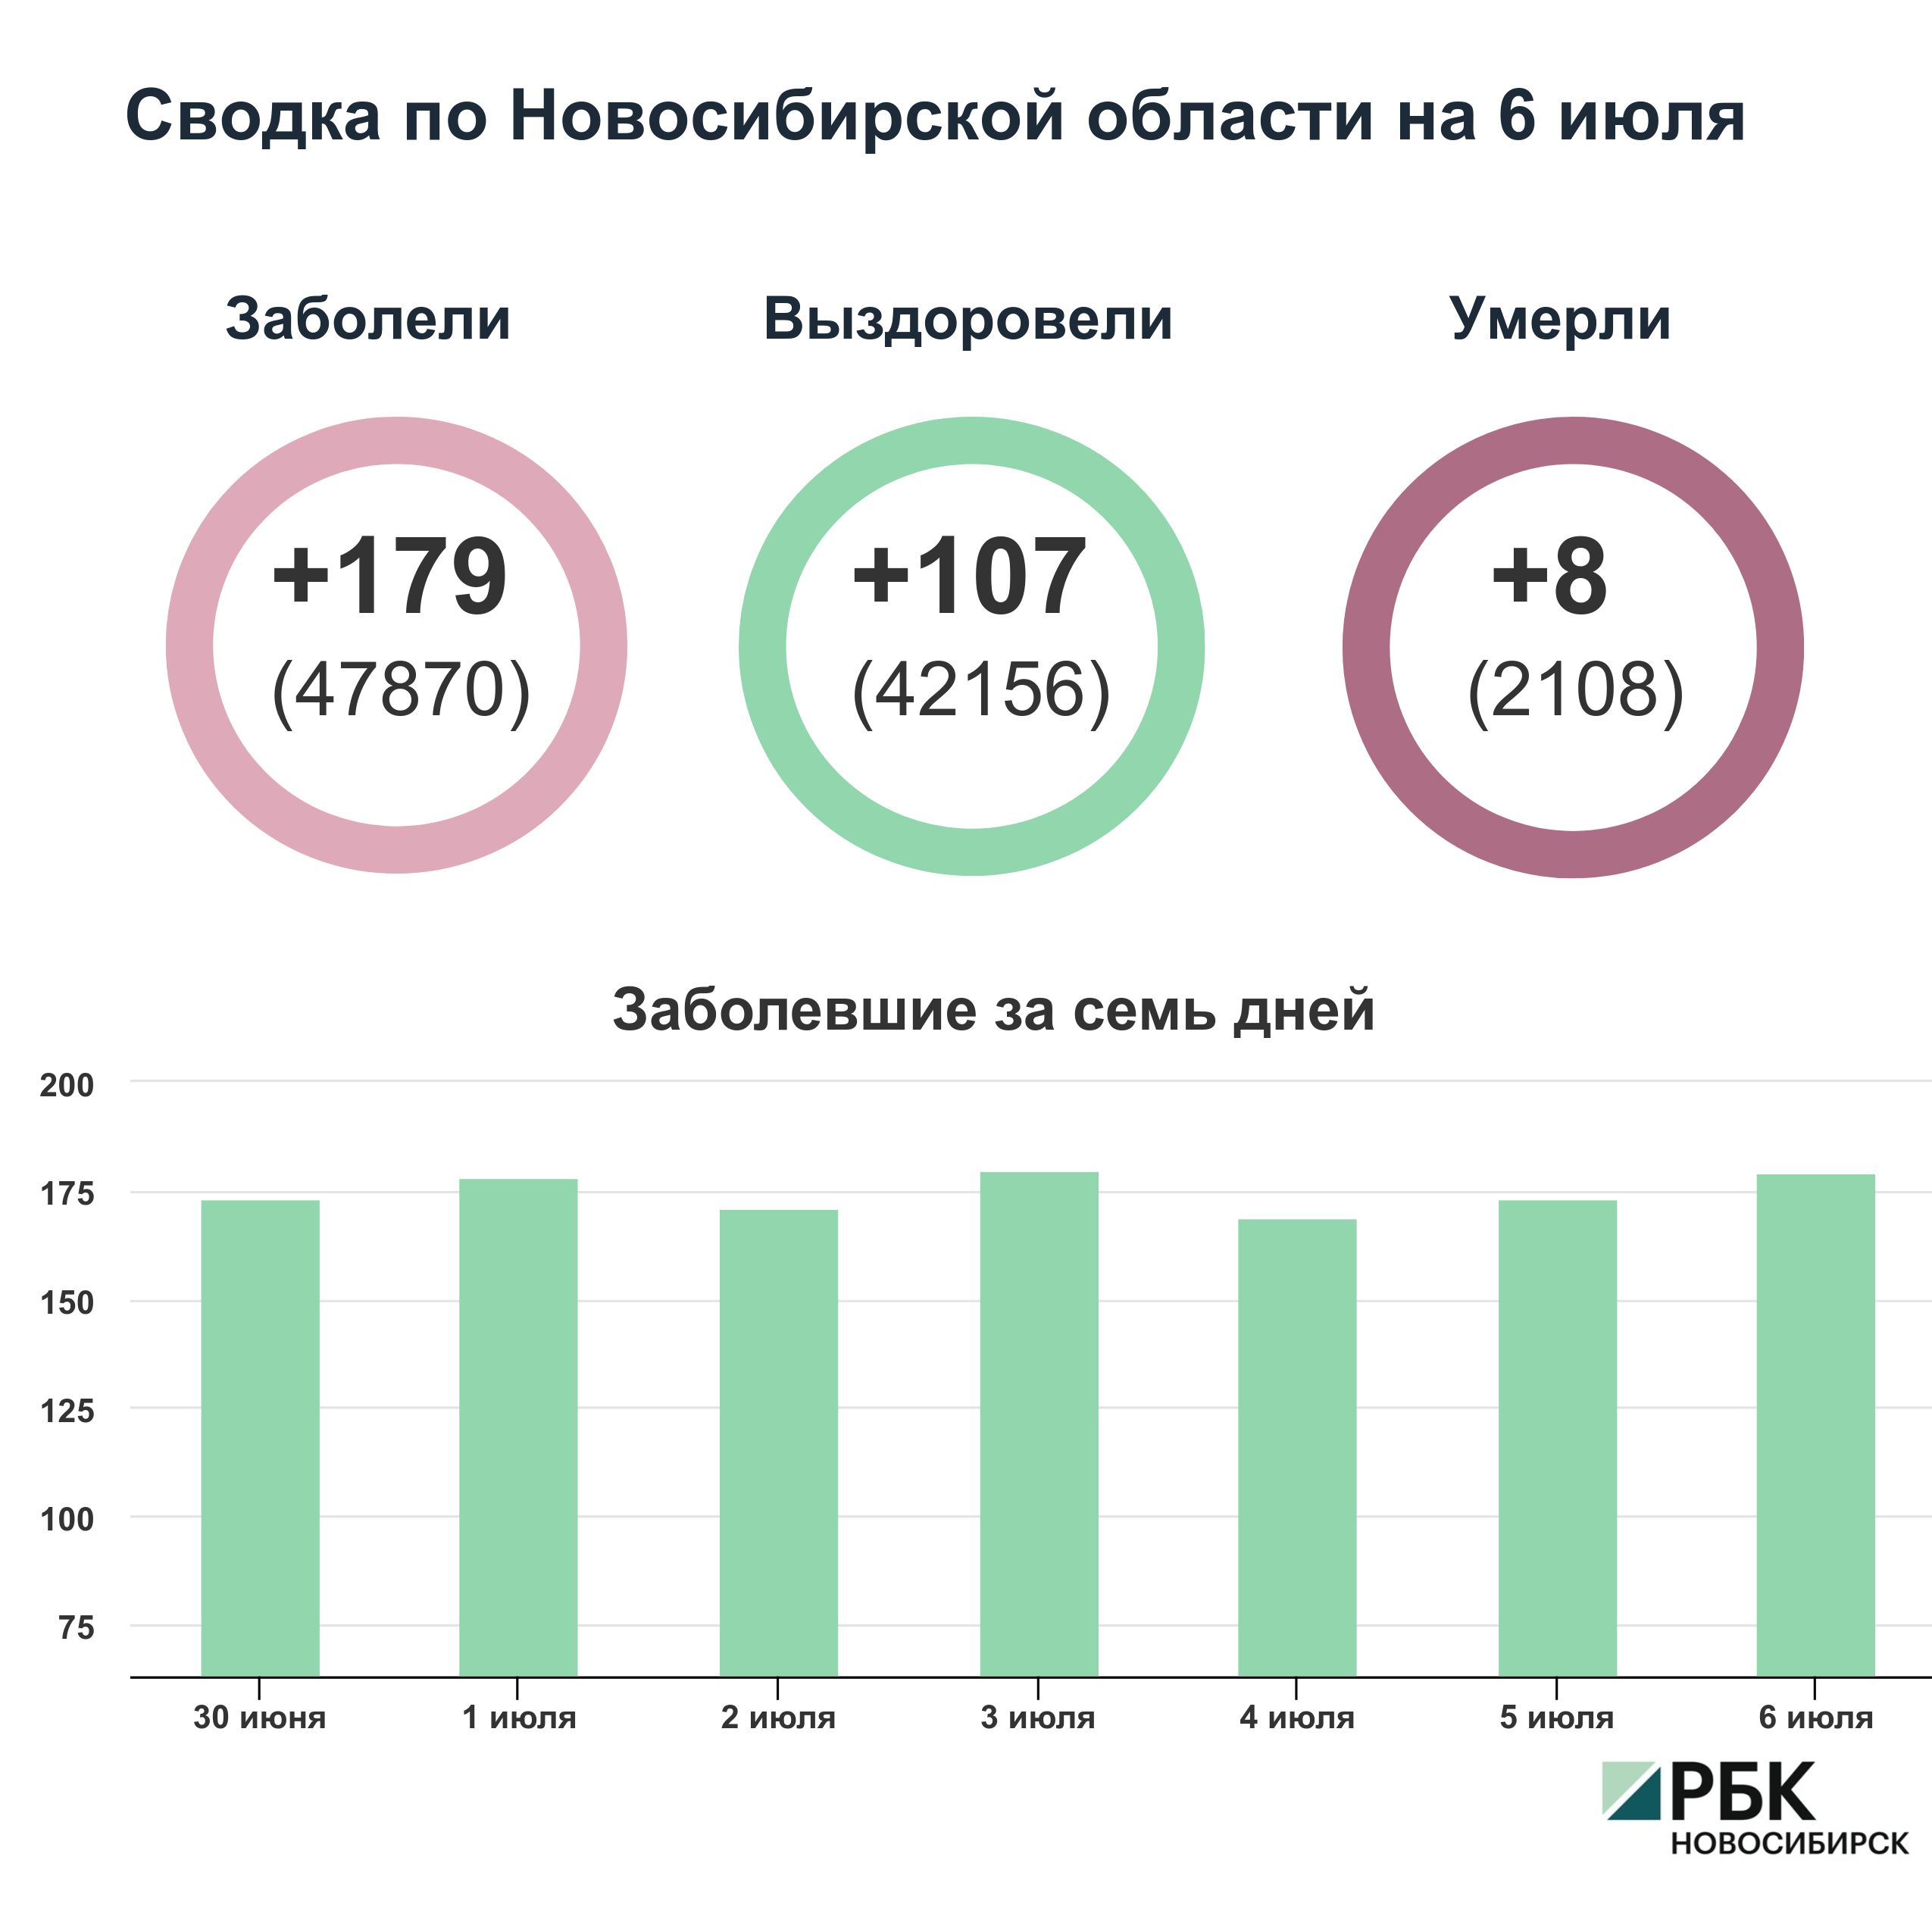 Коронавирус в Новосибирске: сводка на 6 июля